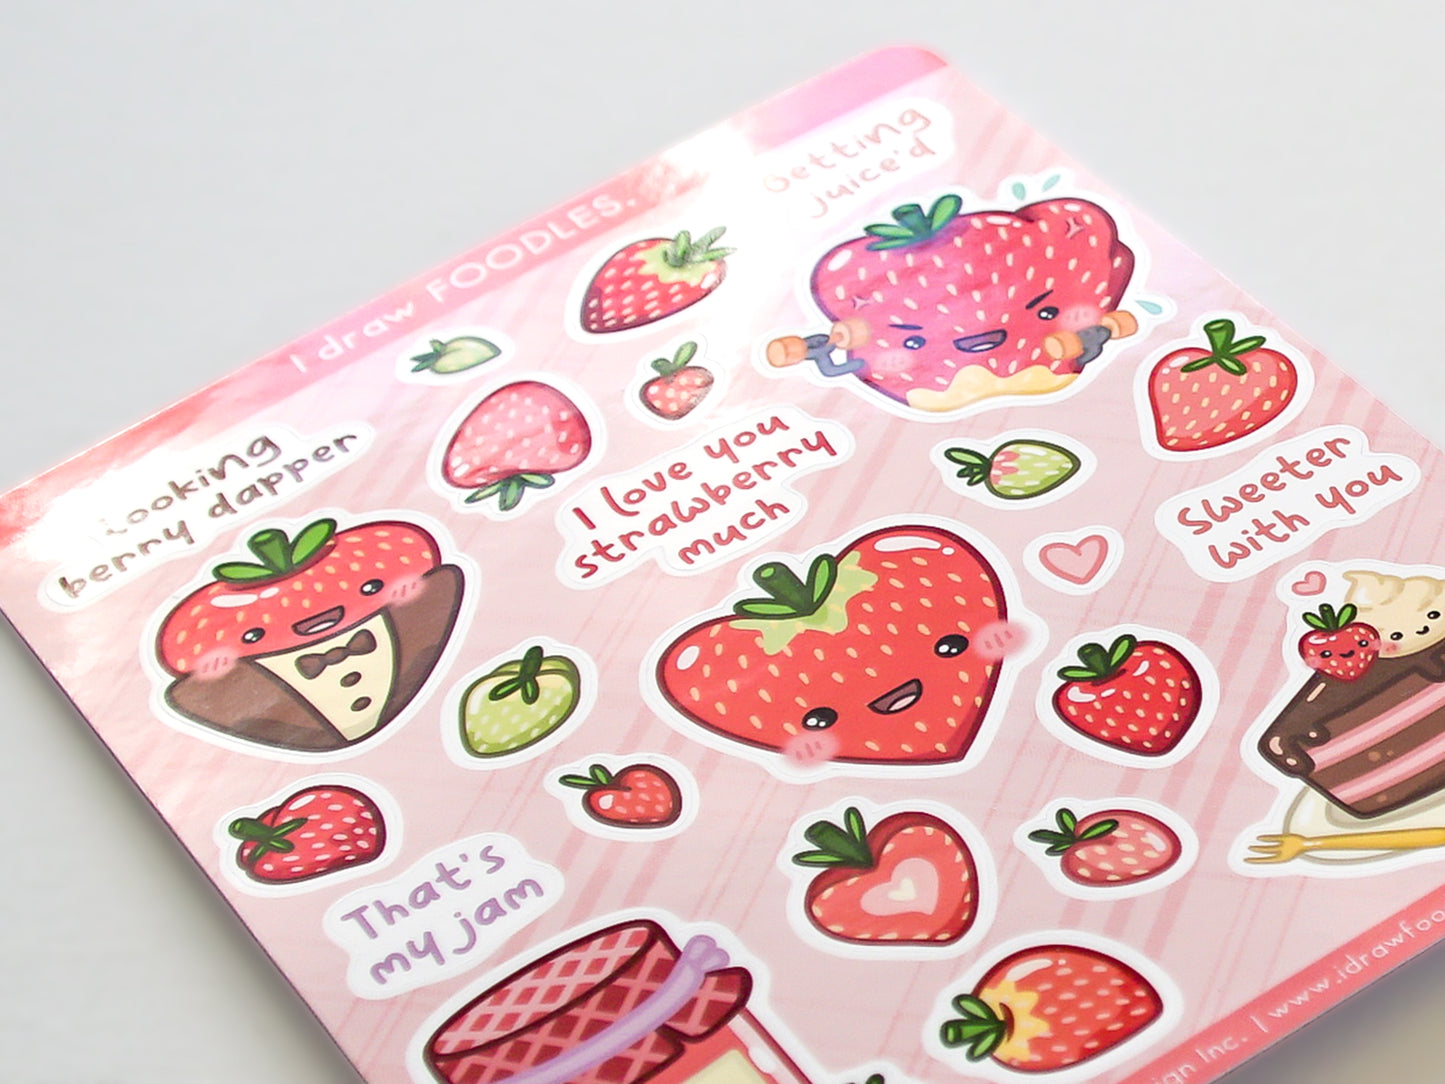 Strawberry Puns Sticker Sheet